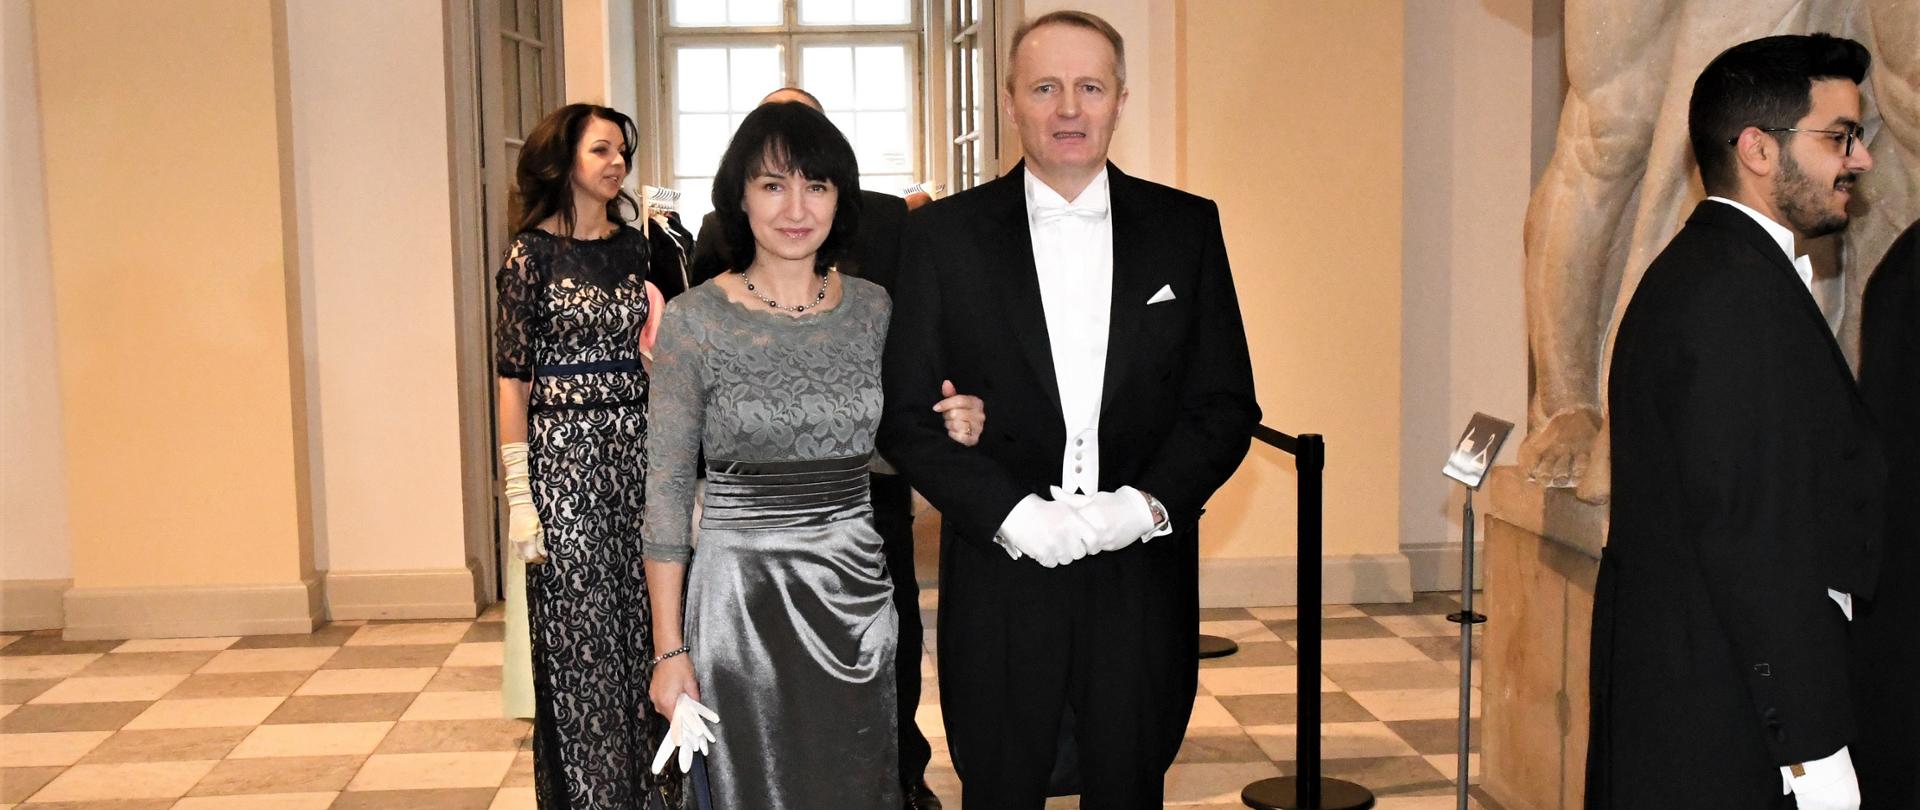 ambasador mościcka-dendys wraz z małżonkiem podczas przyjęcia noworocznego